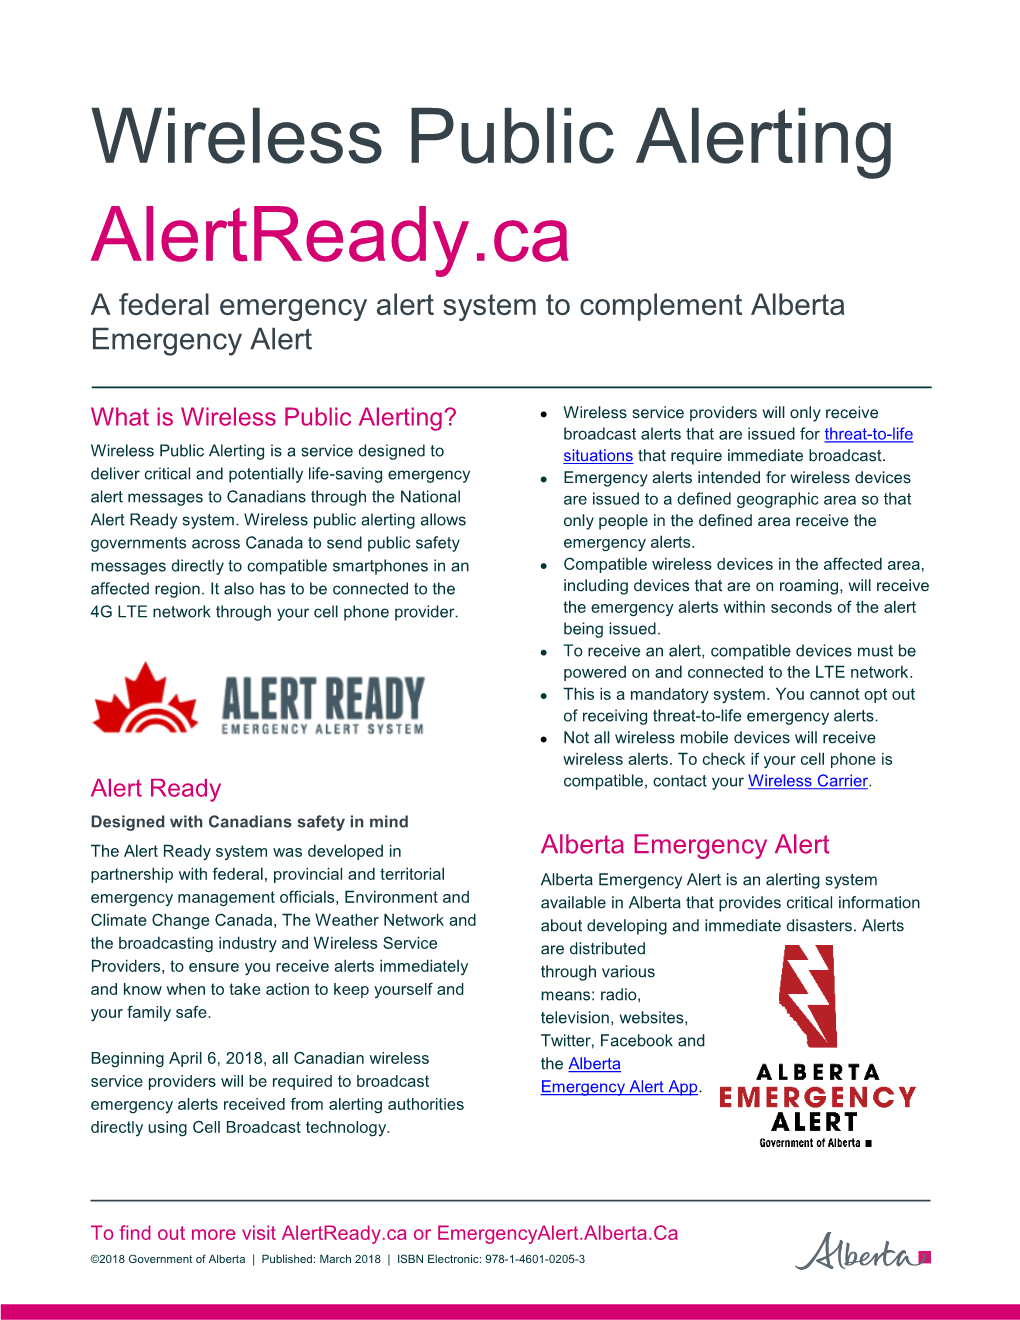 Alert Ready & Alberta Emergency Alert